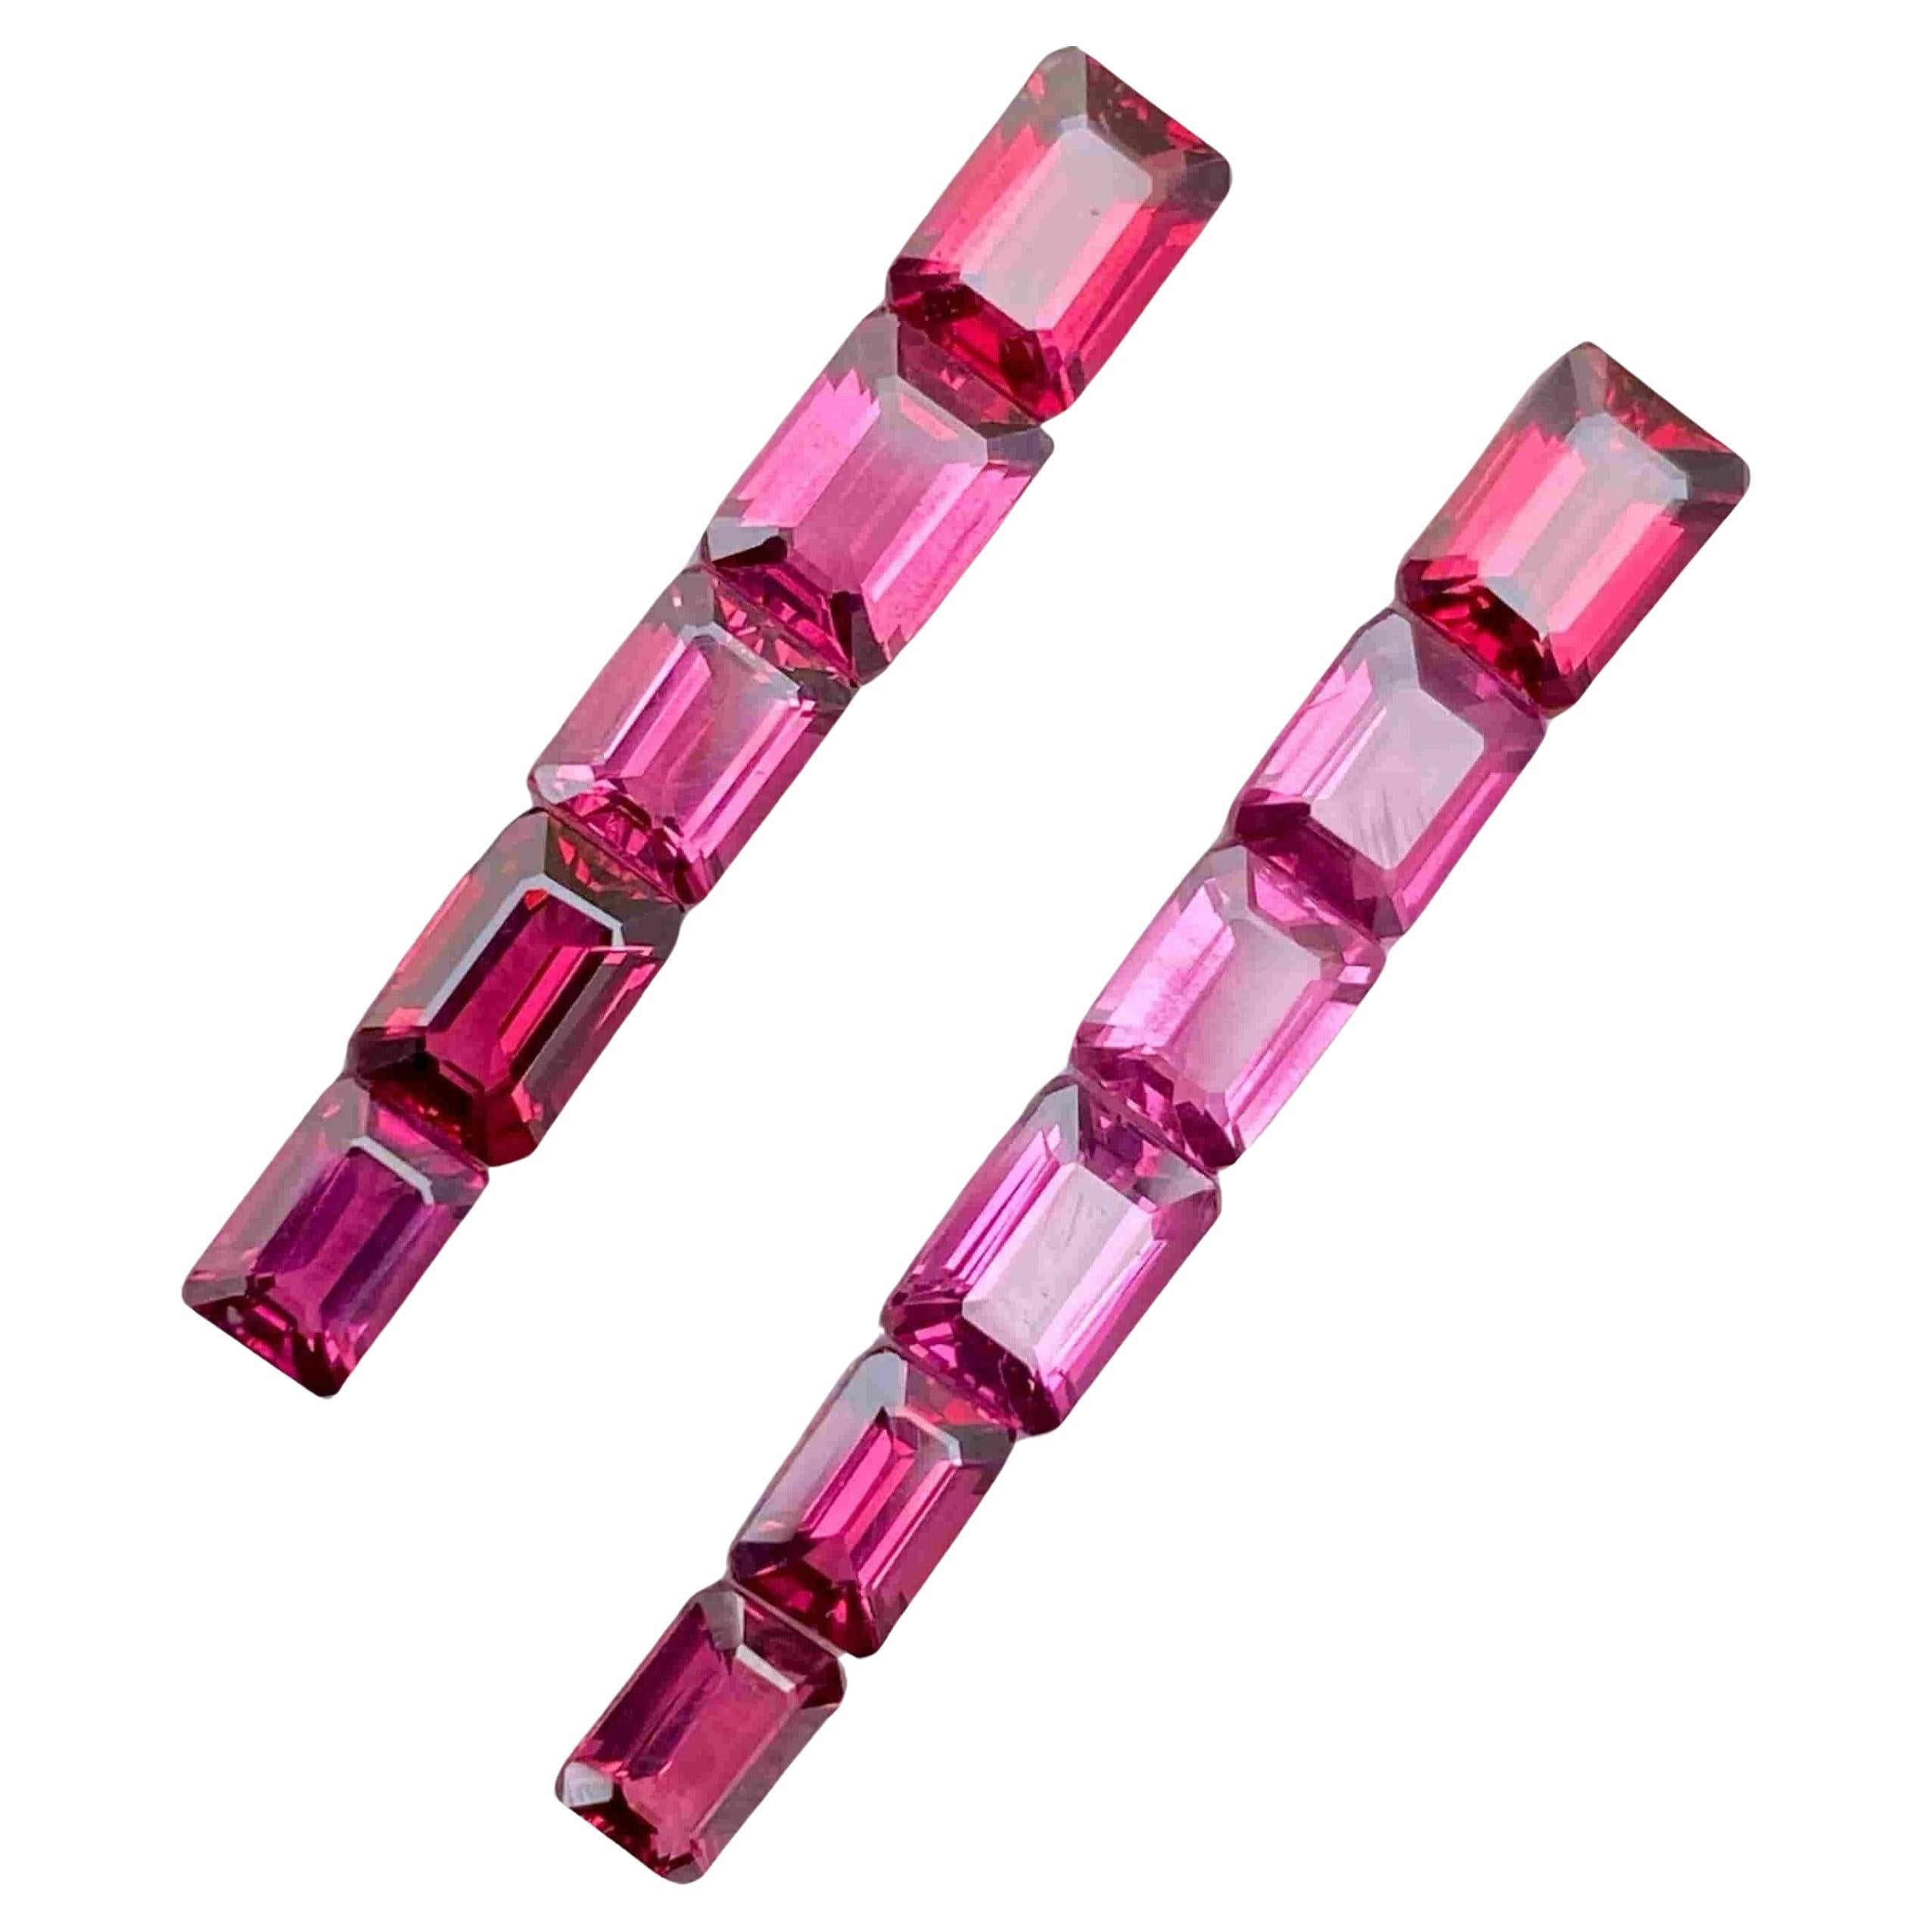 11.40 Carats Pink Rhodolite Garnet Lot Natural Gemstones From Africa For Sale